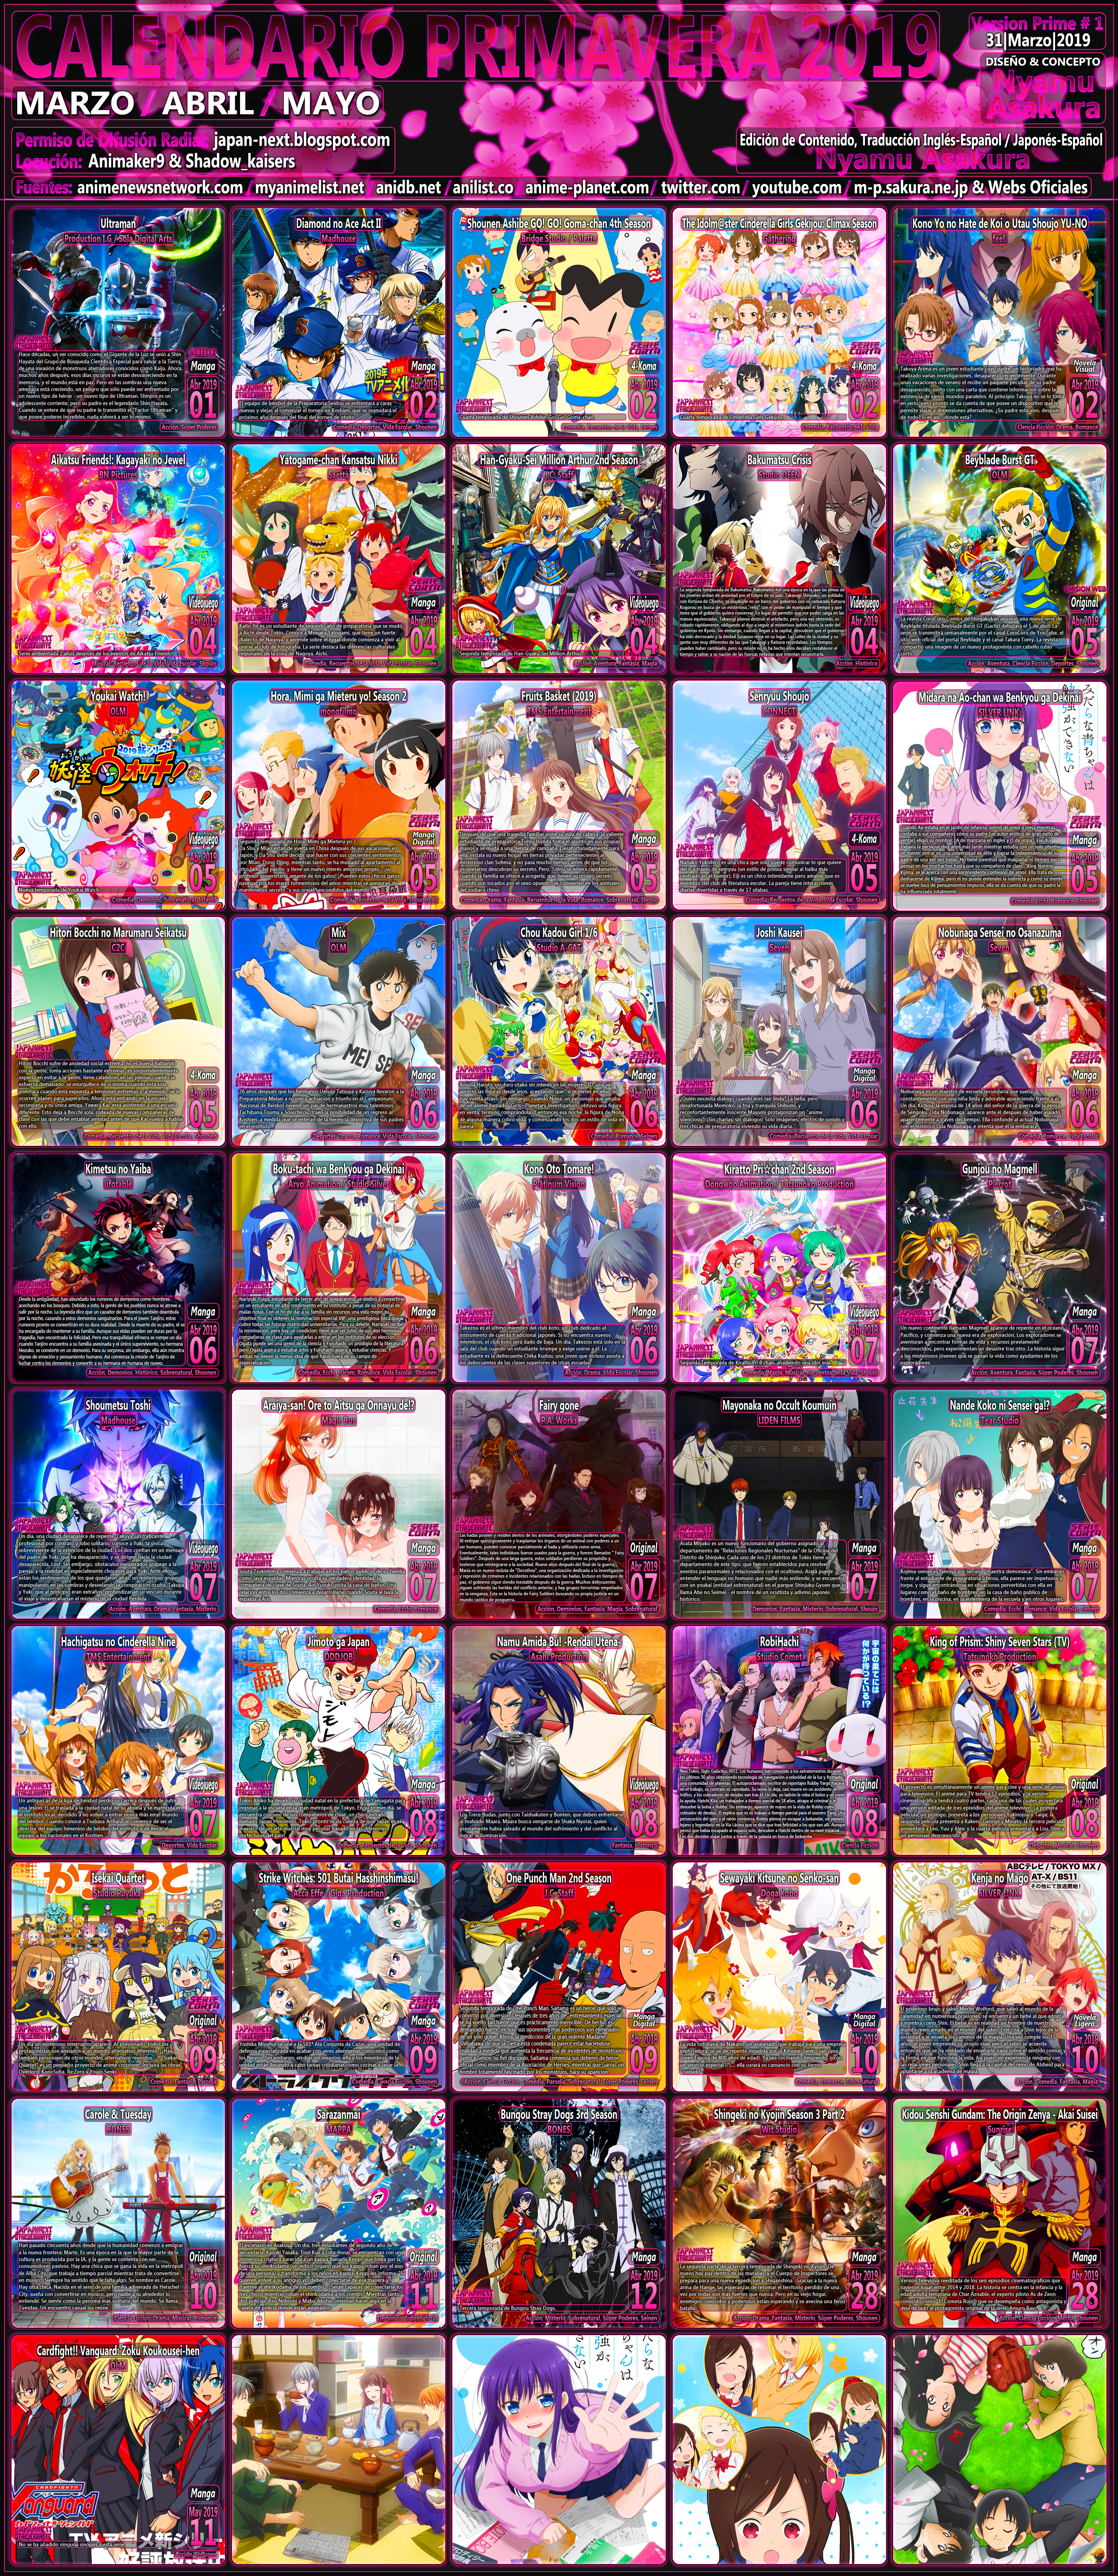 OtakuErrante] Calendario de Estrenos Anime Temporada Primavera